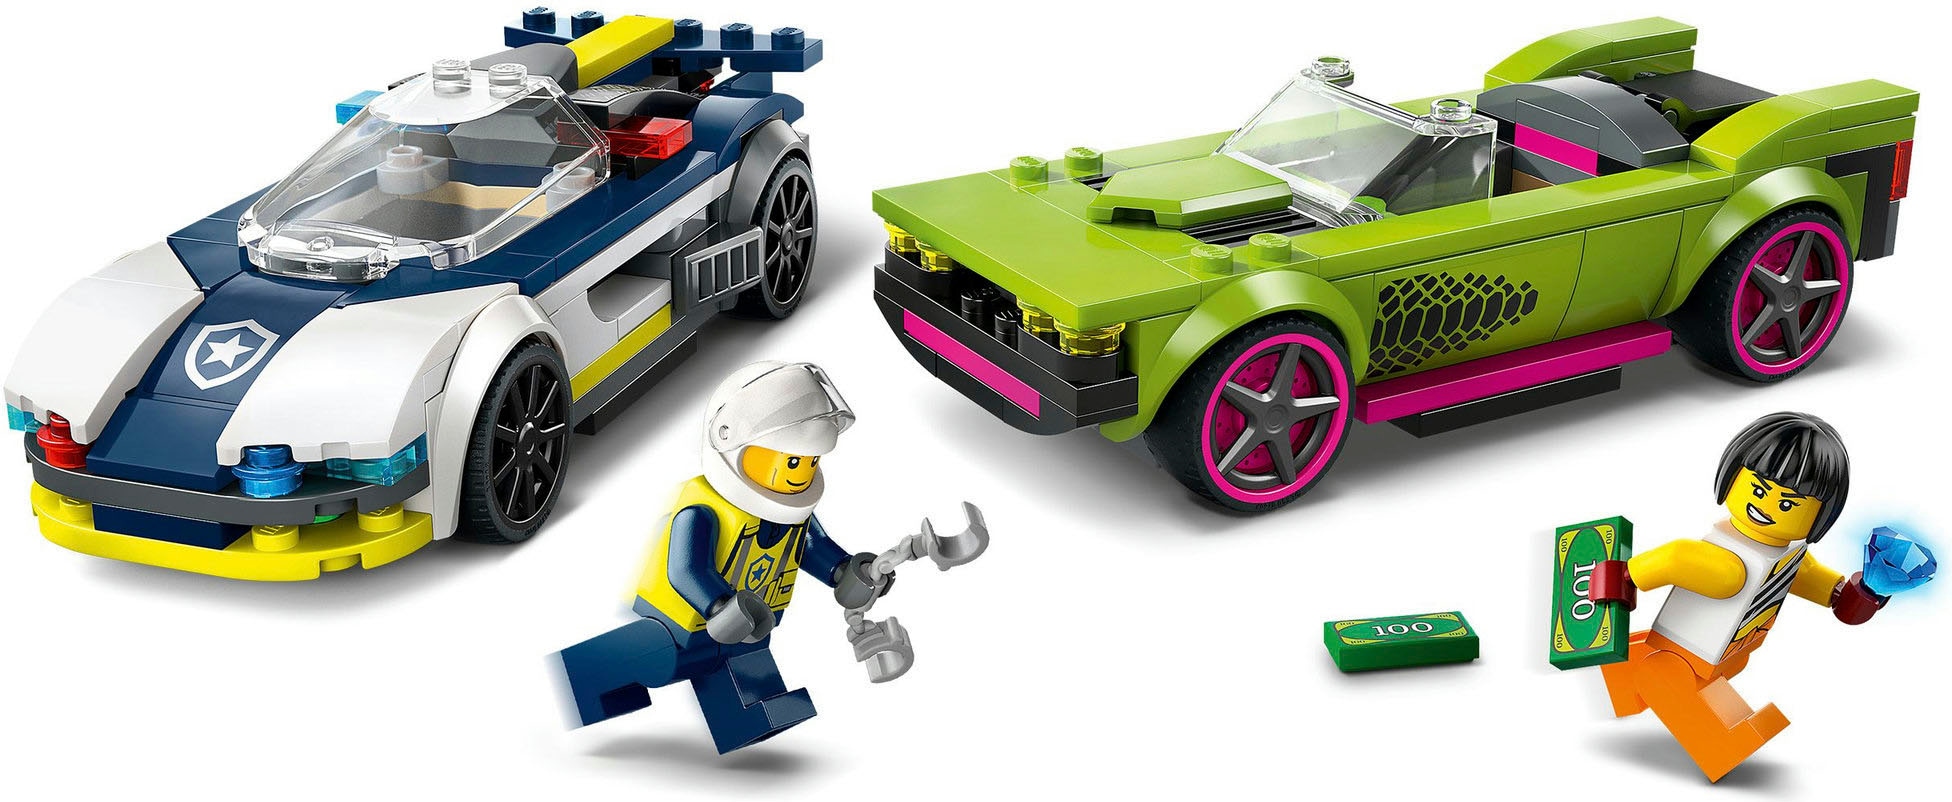 LEGO® Konstruktionsspielsteine »Verfolgungsjagd mit Polizeiauto und Muscle Car (60415), LEGO City«, (213 St.), Made in Europe